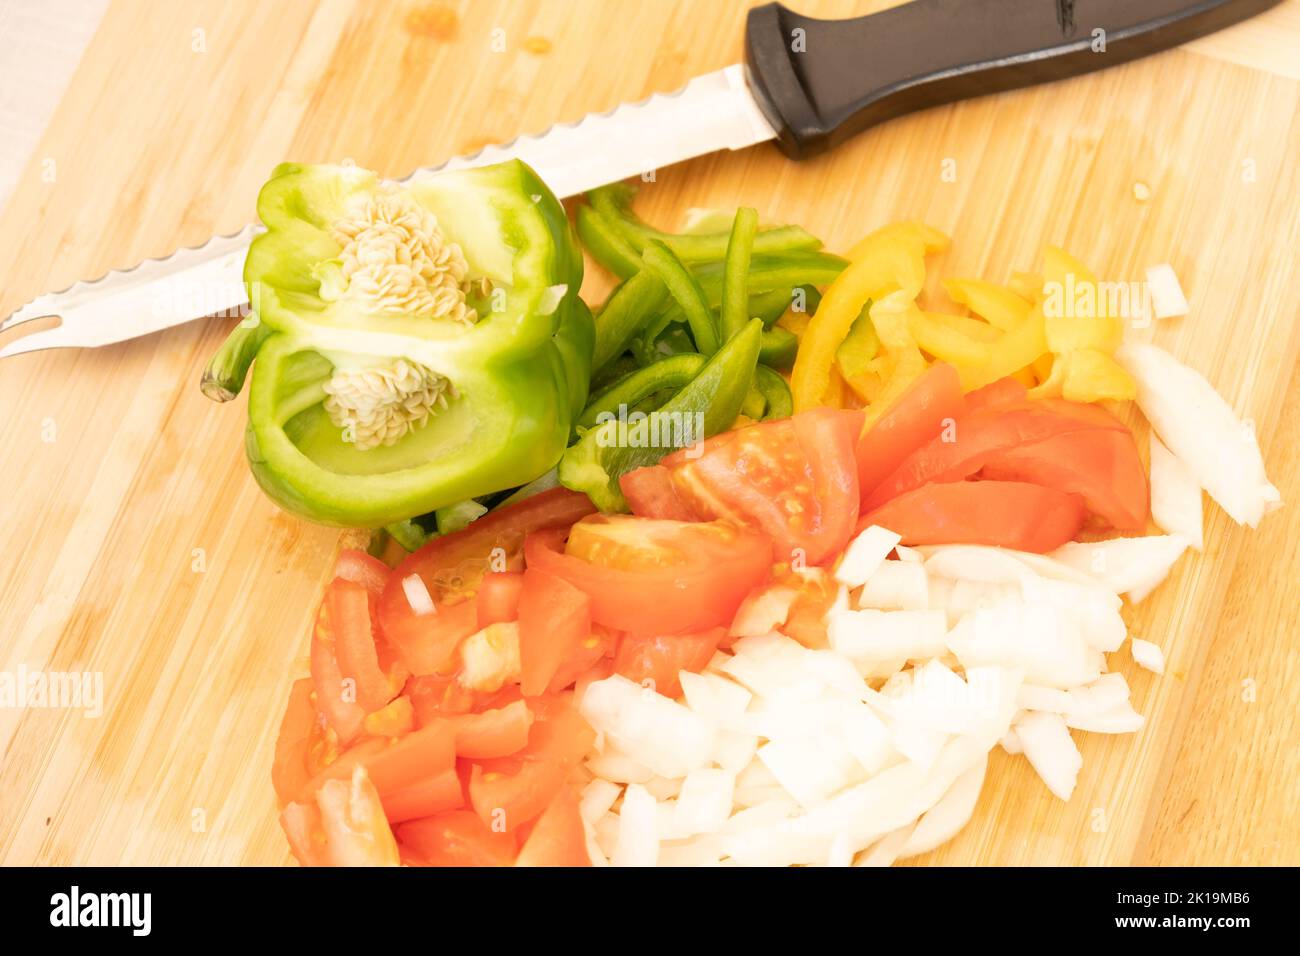 Preparazione di alimenti nella cucina domestica e tiro all'occasione. Foto Stock